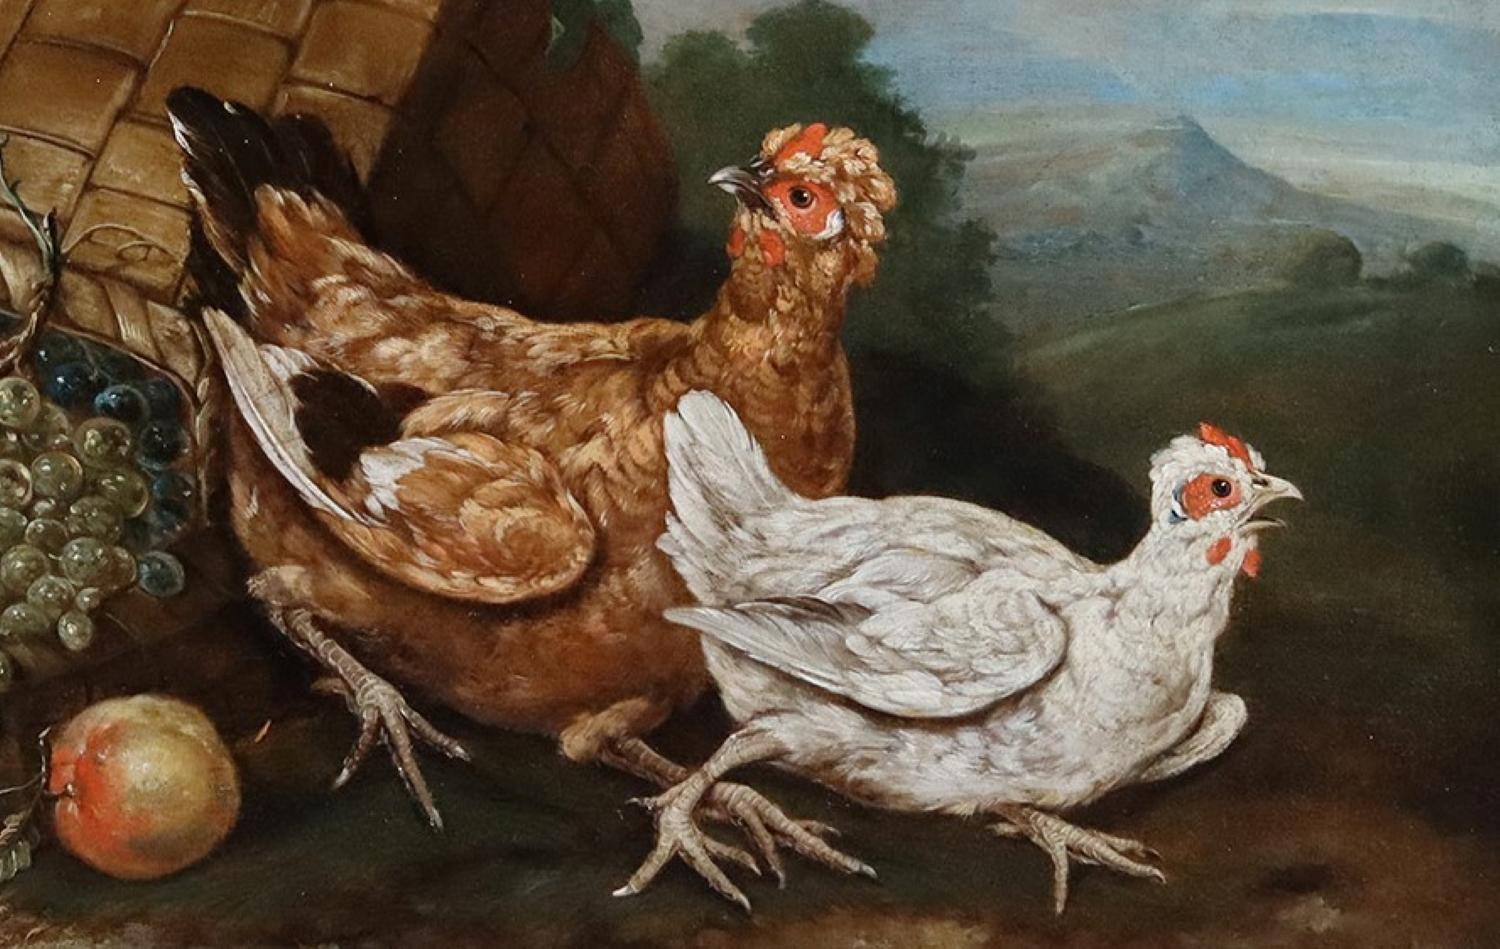 Giovanni Agostino Cassana 
(C.I.C. - 6 mai 1720) Vénitien

Oiseaux avec une corbeille de fruits retournée

Huile sur toile : 25 x 35 in. Cadre : 33 x 43 in.

Abate, ou Giovanni Agostino Cassana (c.1658 - 6 mai 1720) était un peintre italien de la